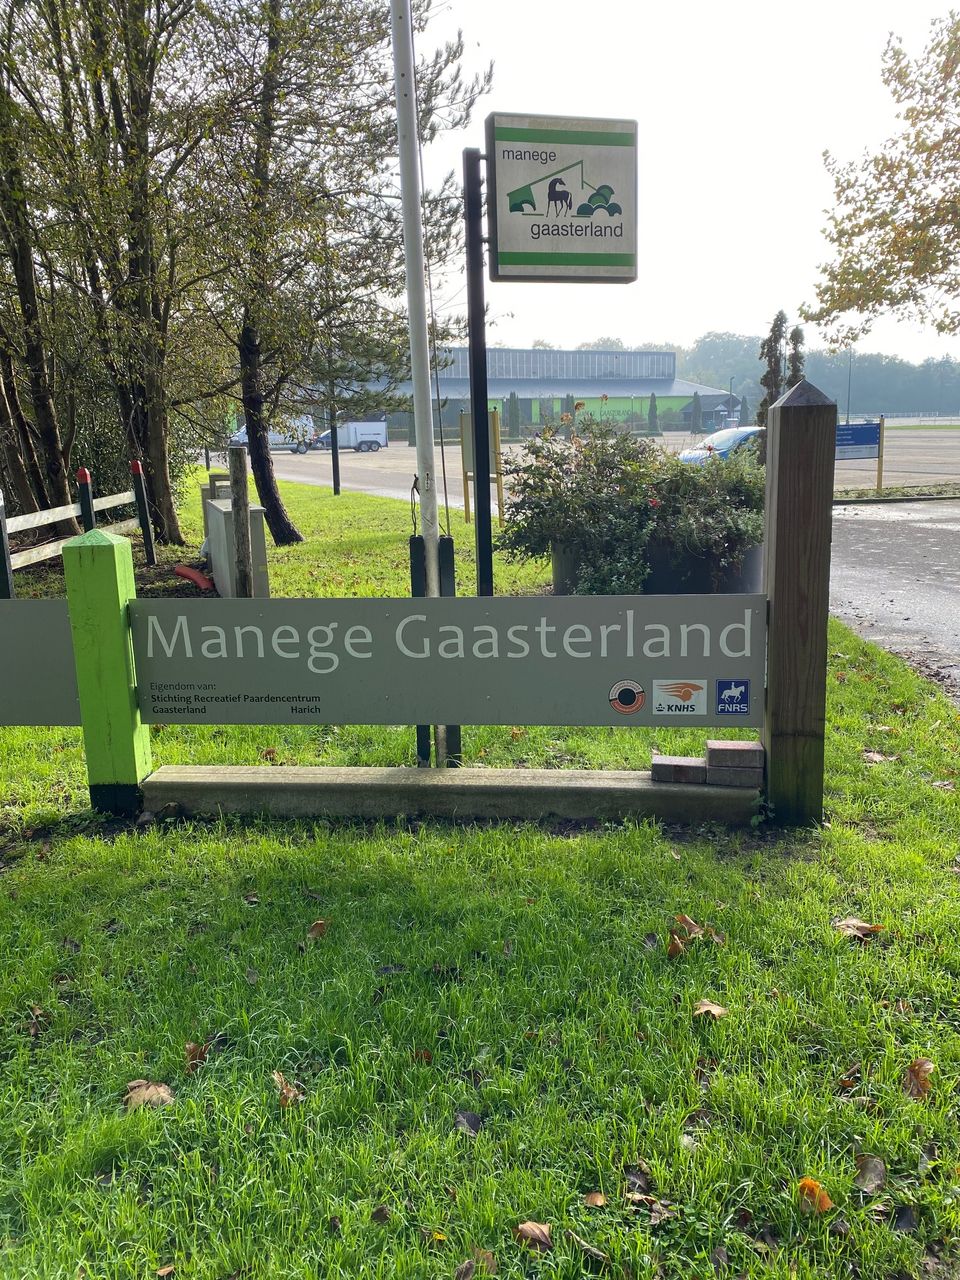 Manege Gaasterland